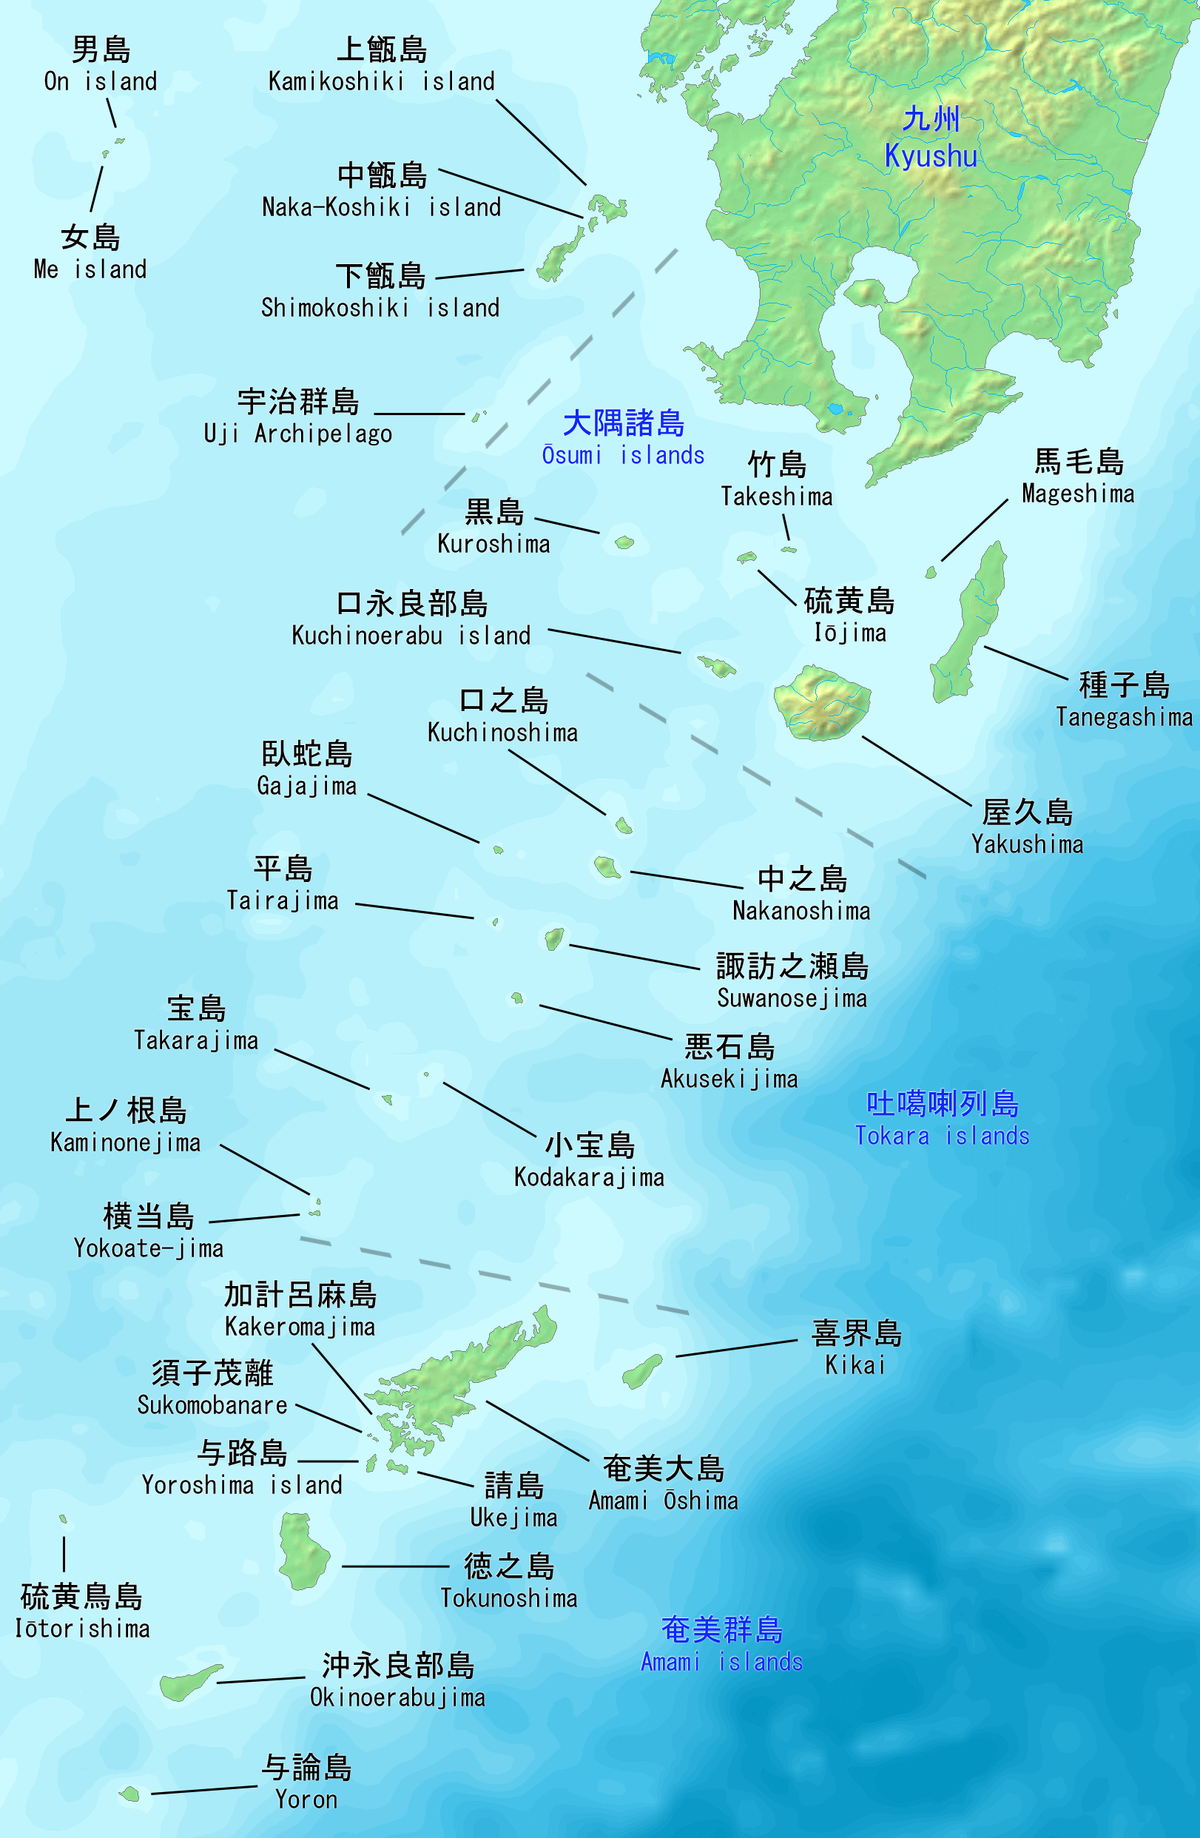 薩南諸島 Wikipedia